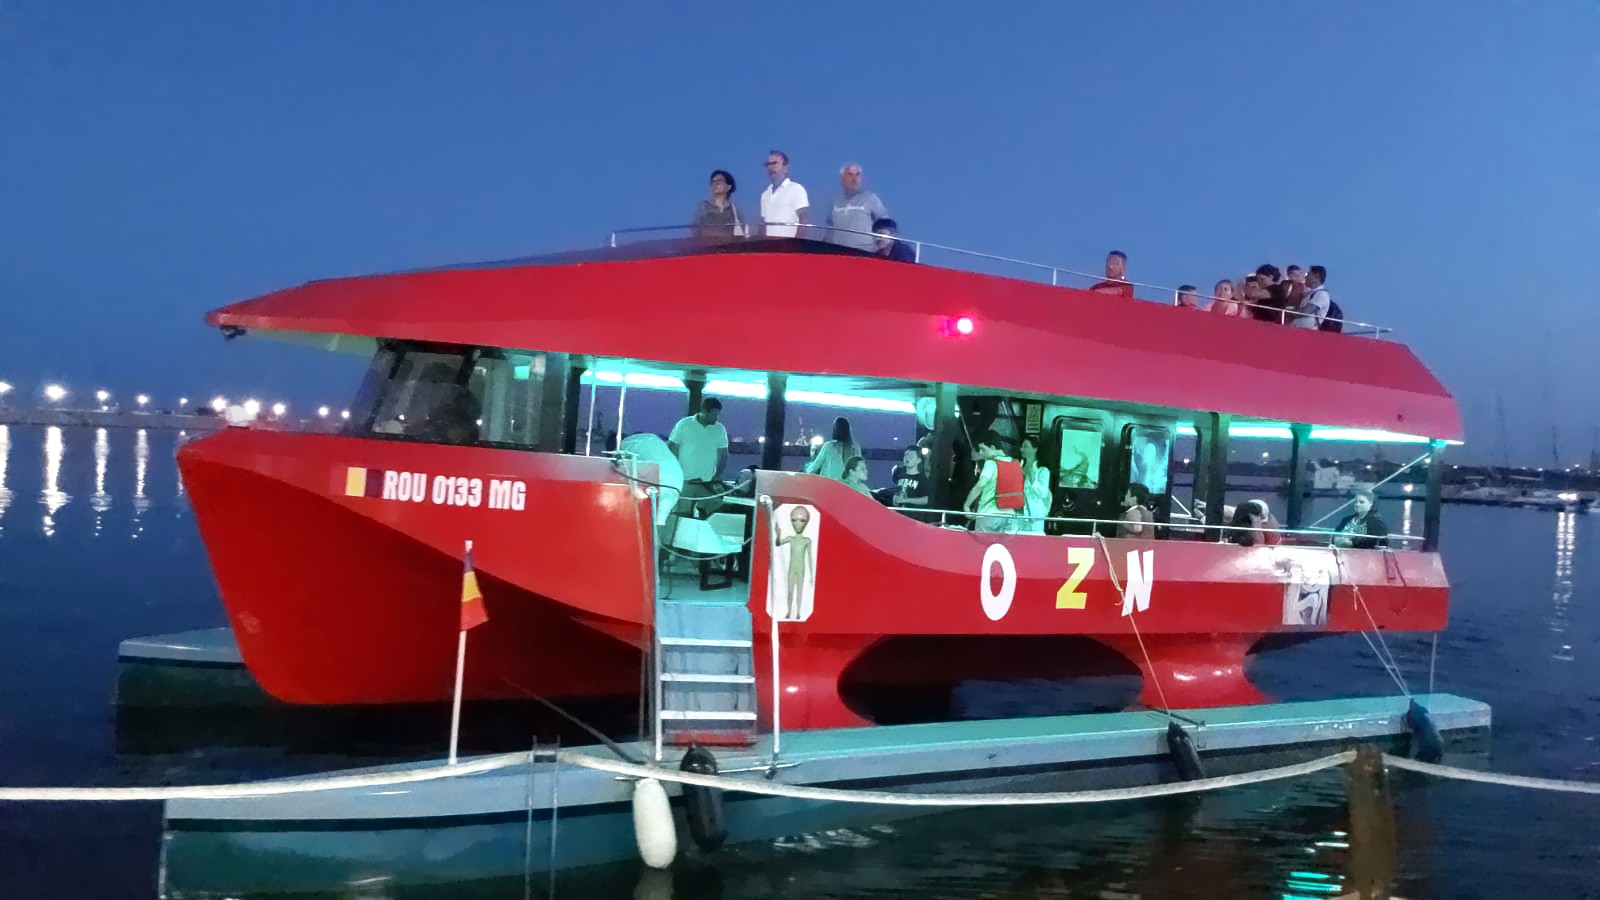 Evenimente Speciale în largul mării cu catamaranul "OZN" - Mangalia